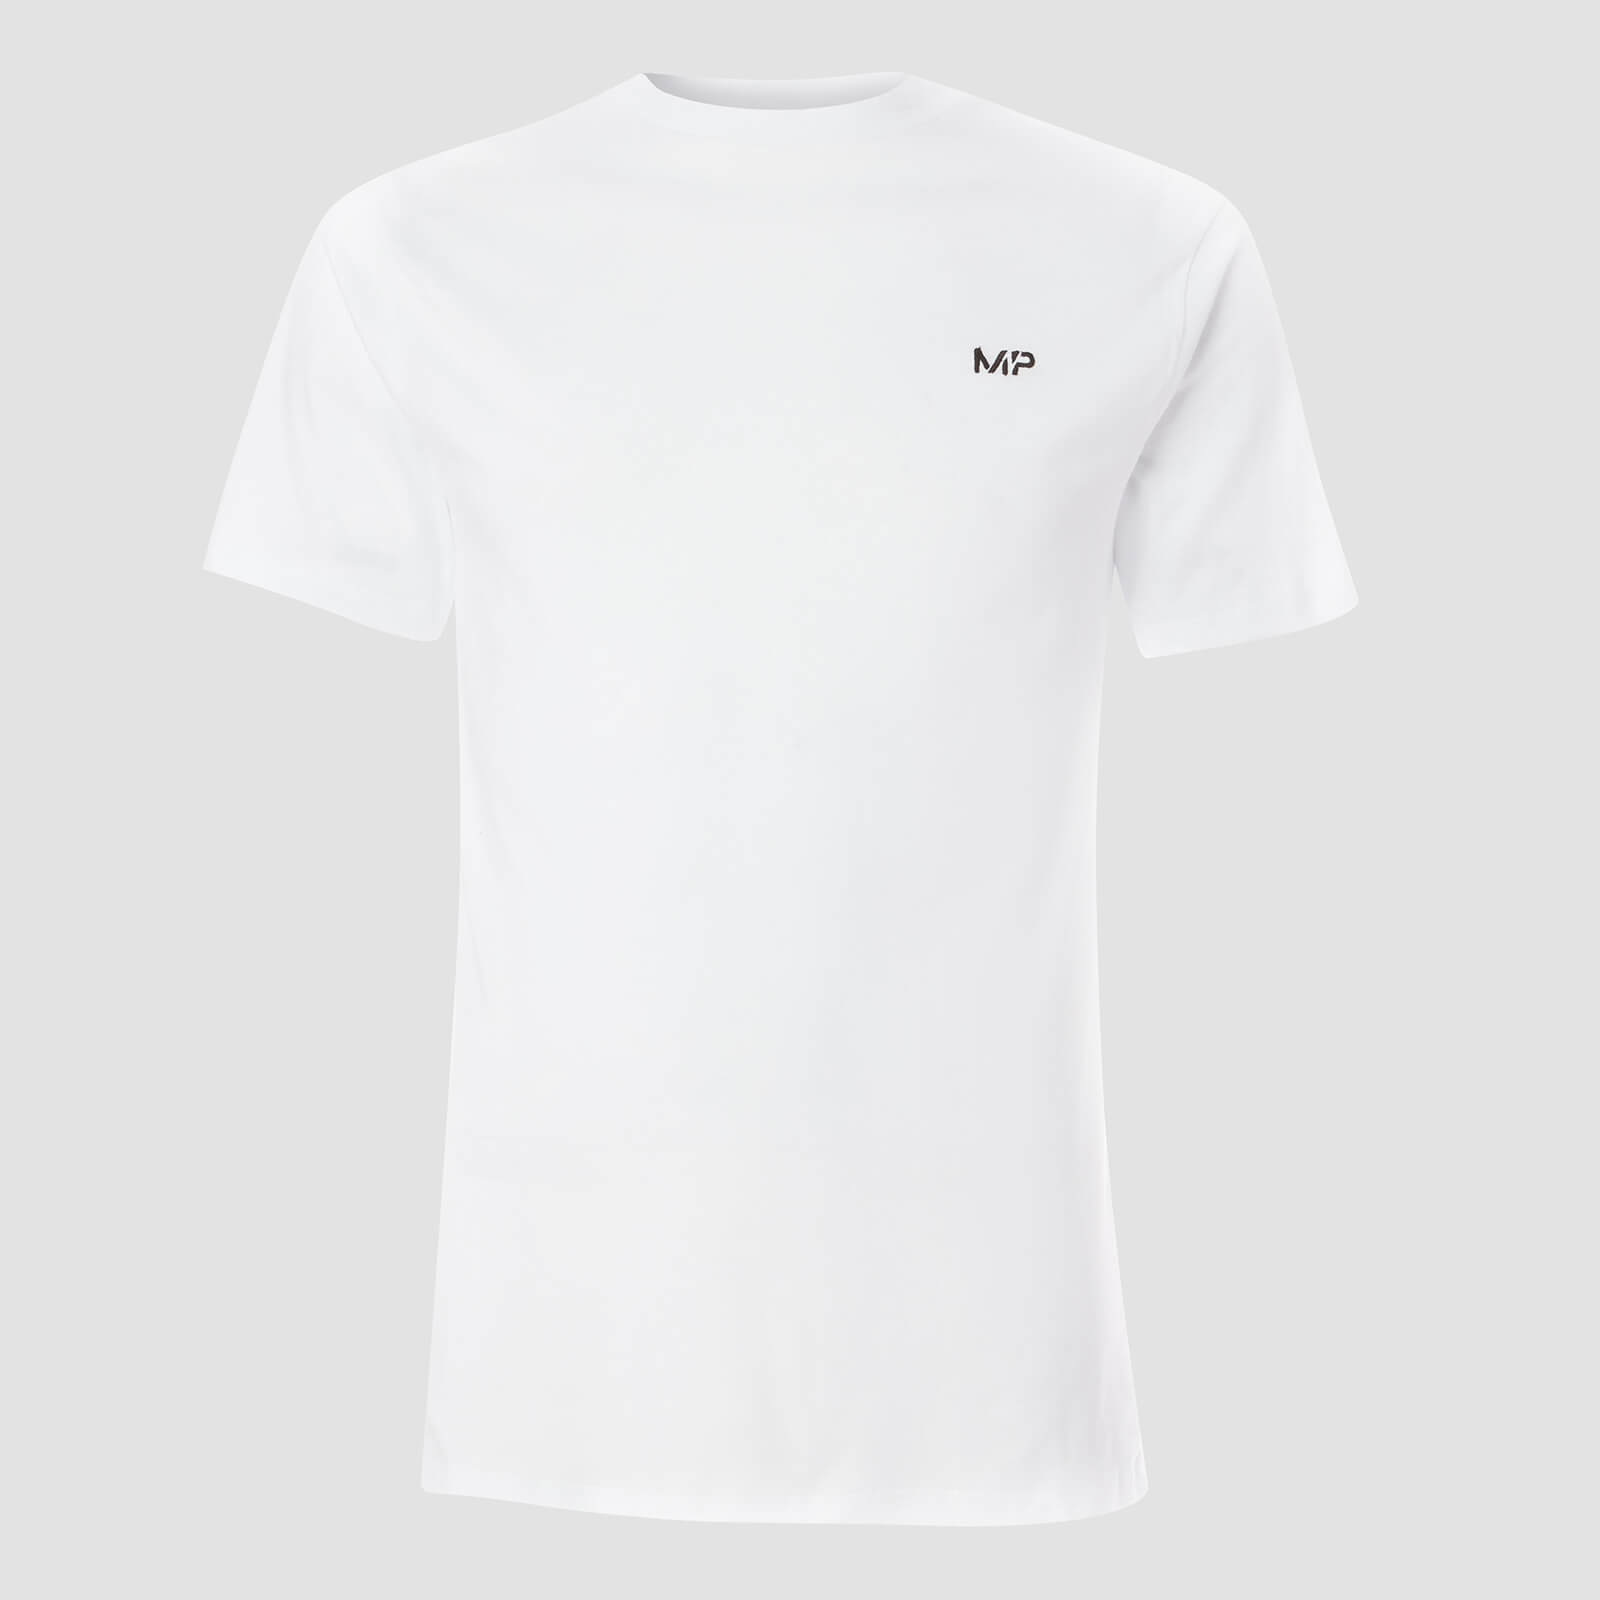 Myprotein T-shirt Essentials MP da uomo (confezione da 2) - Nero/Bianco - XS